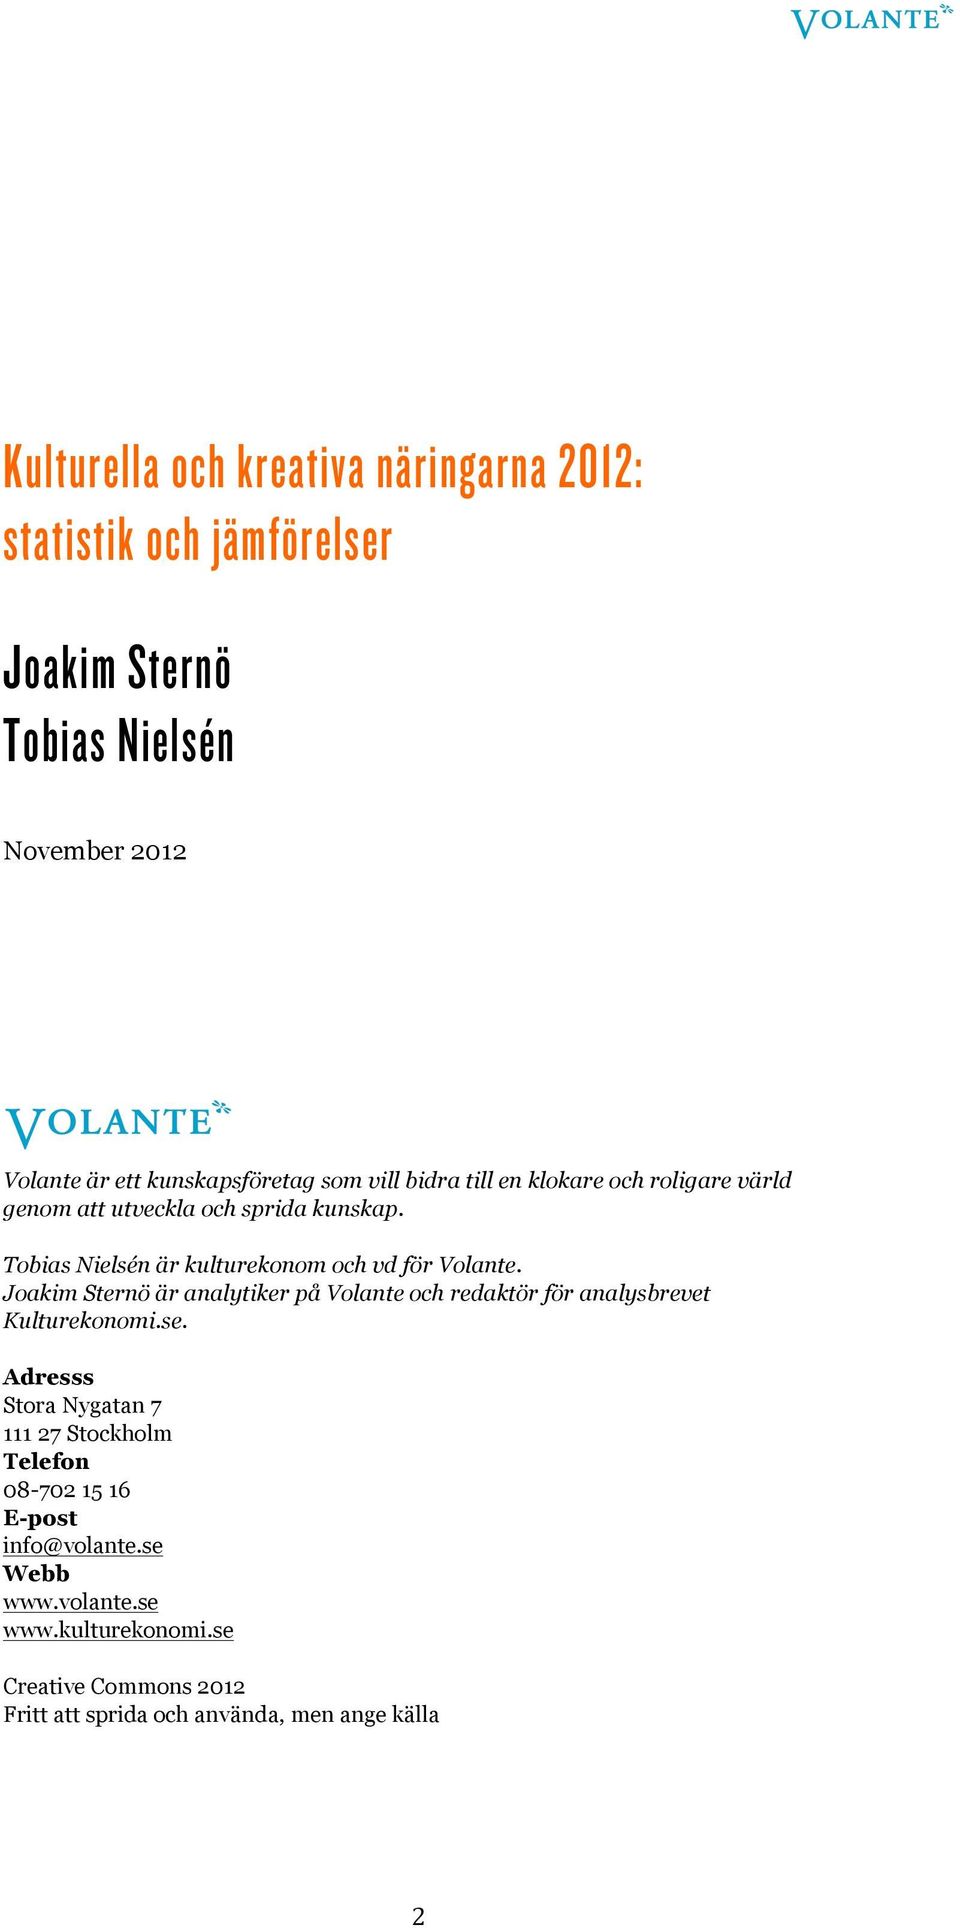 Joakim Sternö är analytiker på Volante och redaktör för analysbrevet Kulturekonomi.se.